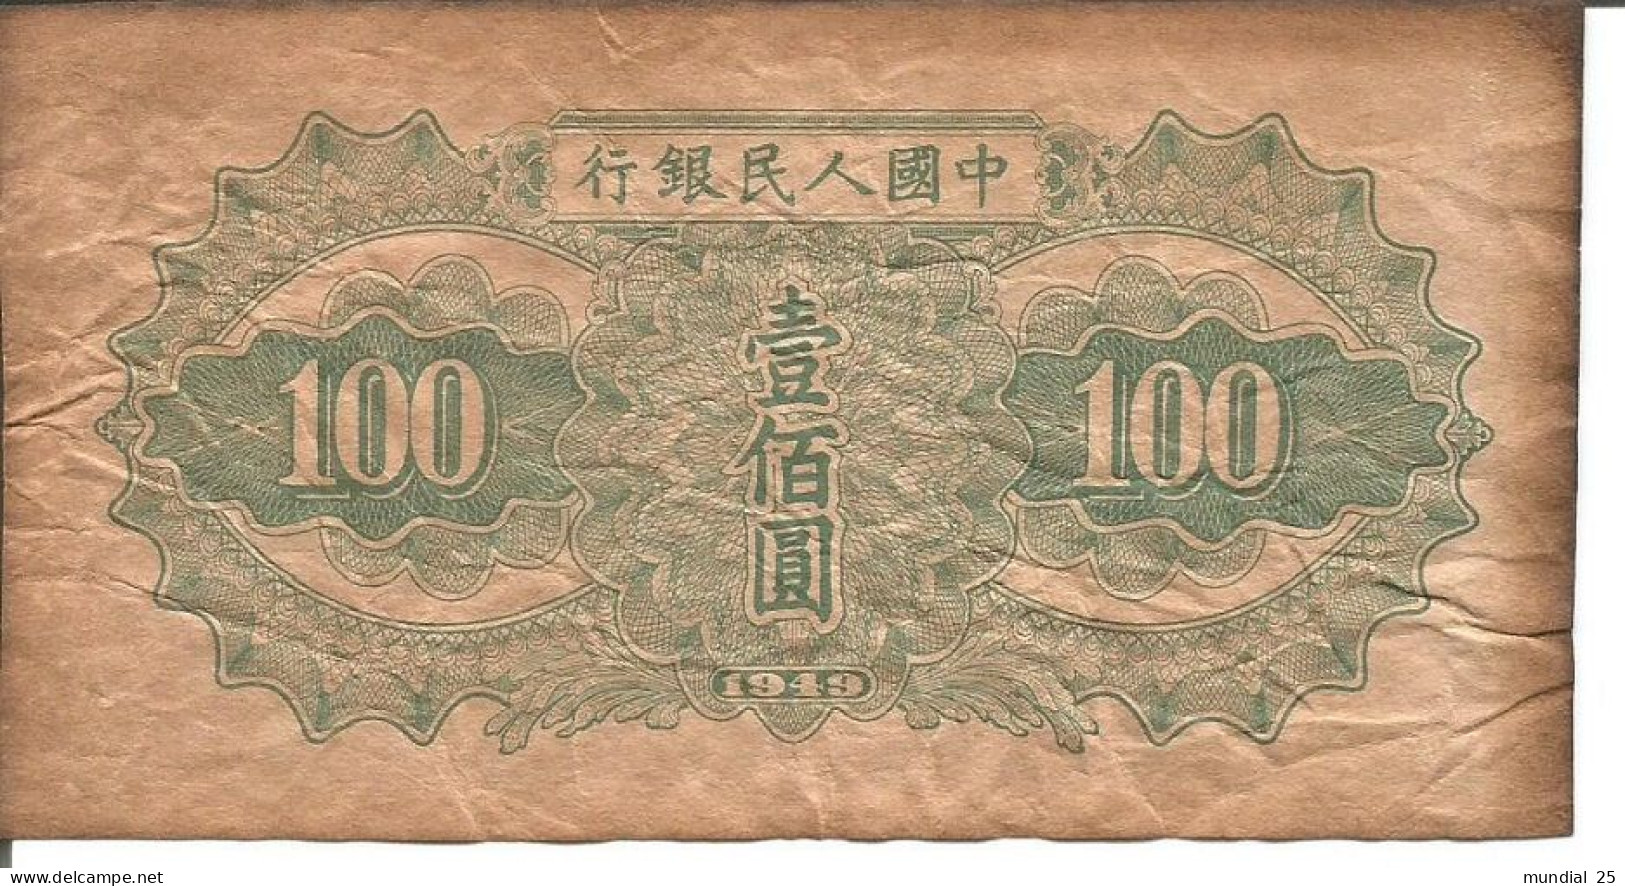 CHINA 100 YUAN 1949 - REPRINT NOTE - China